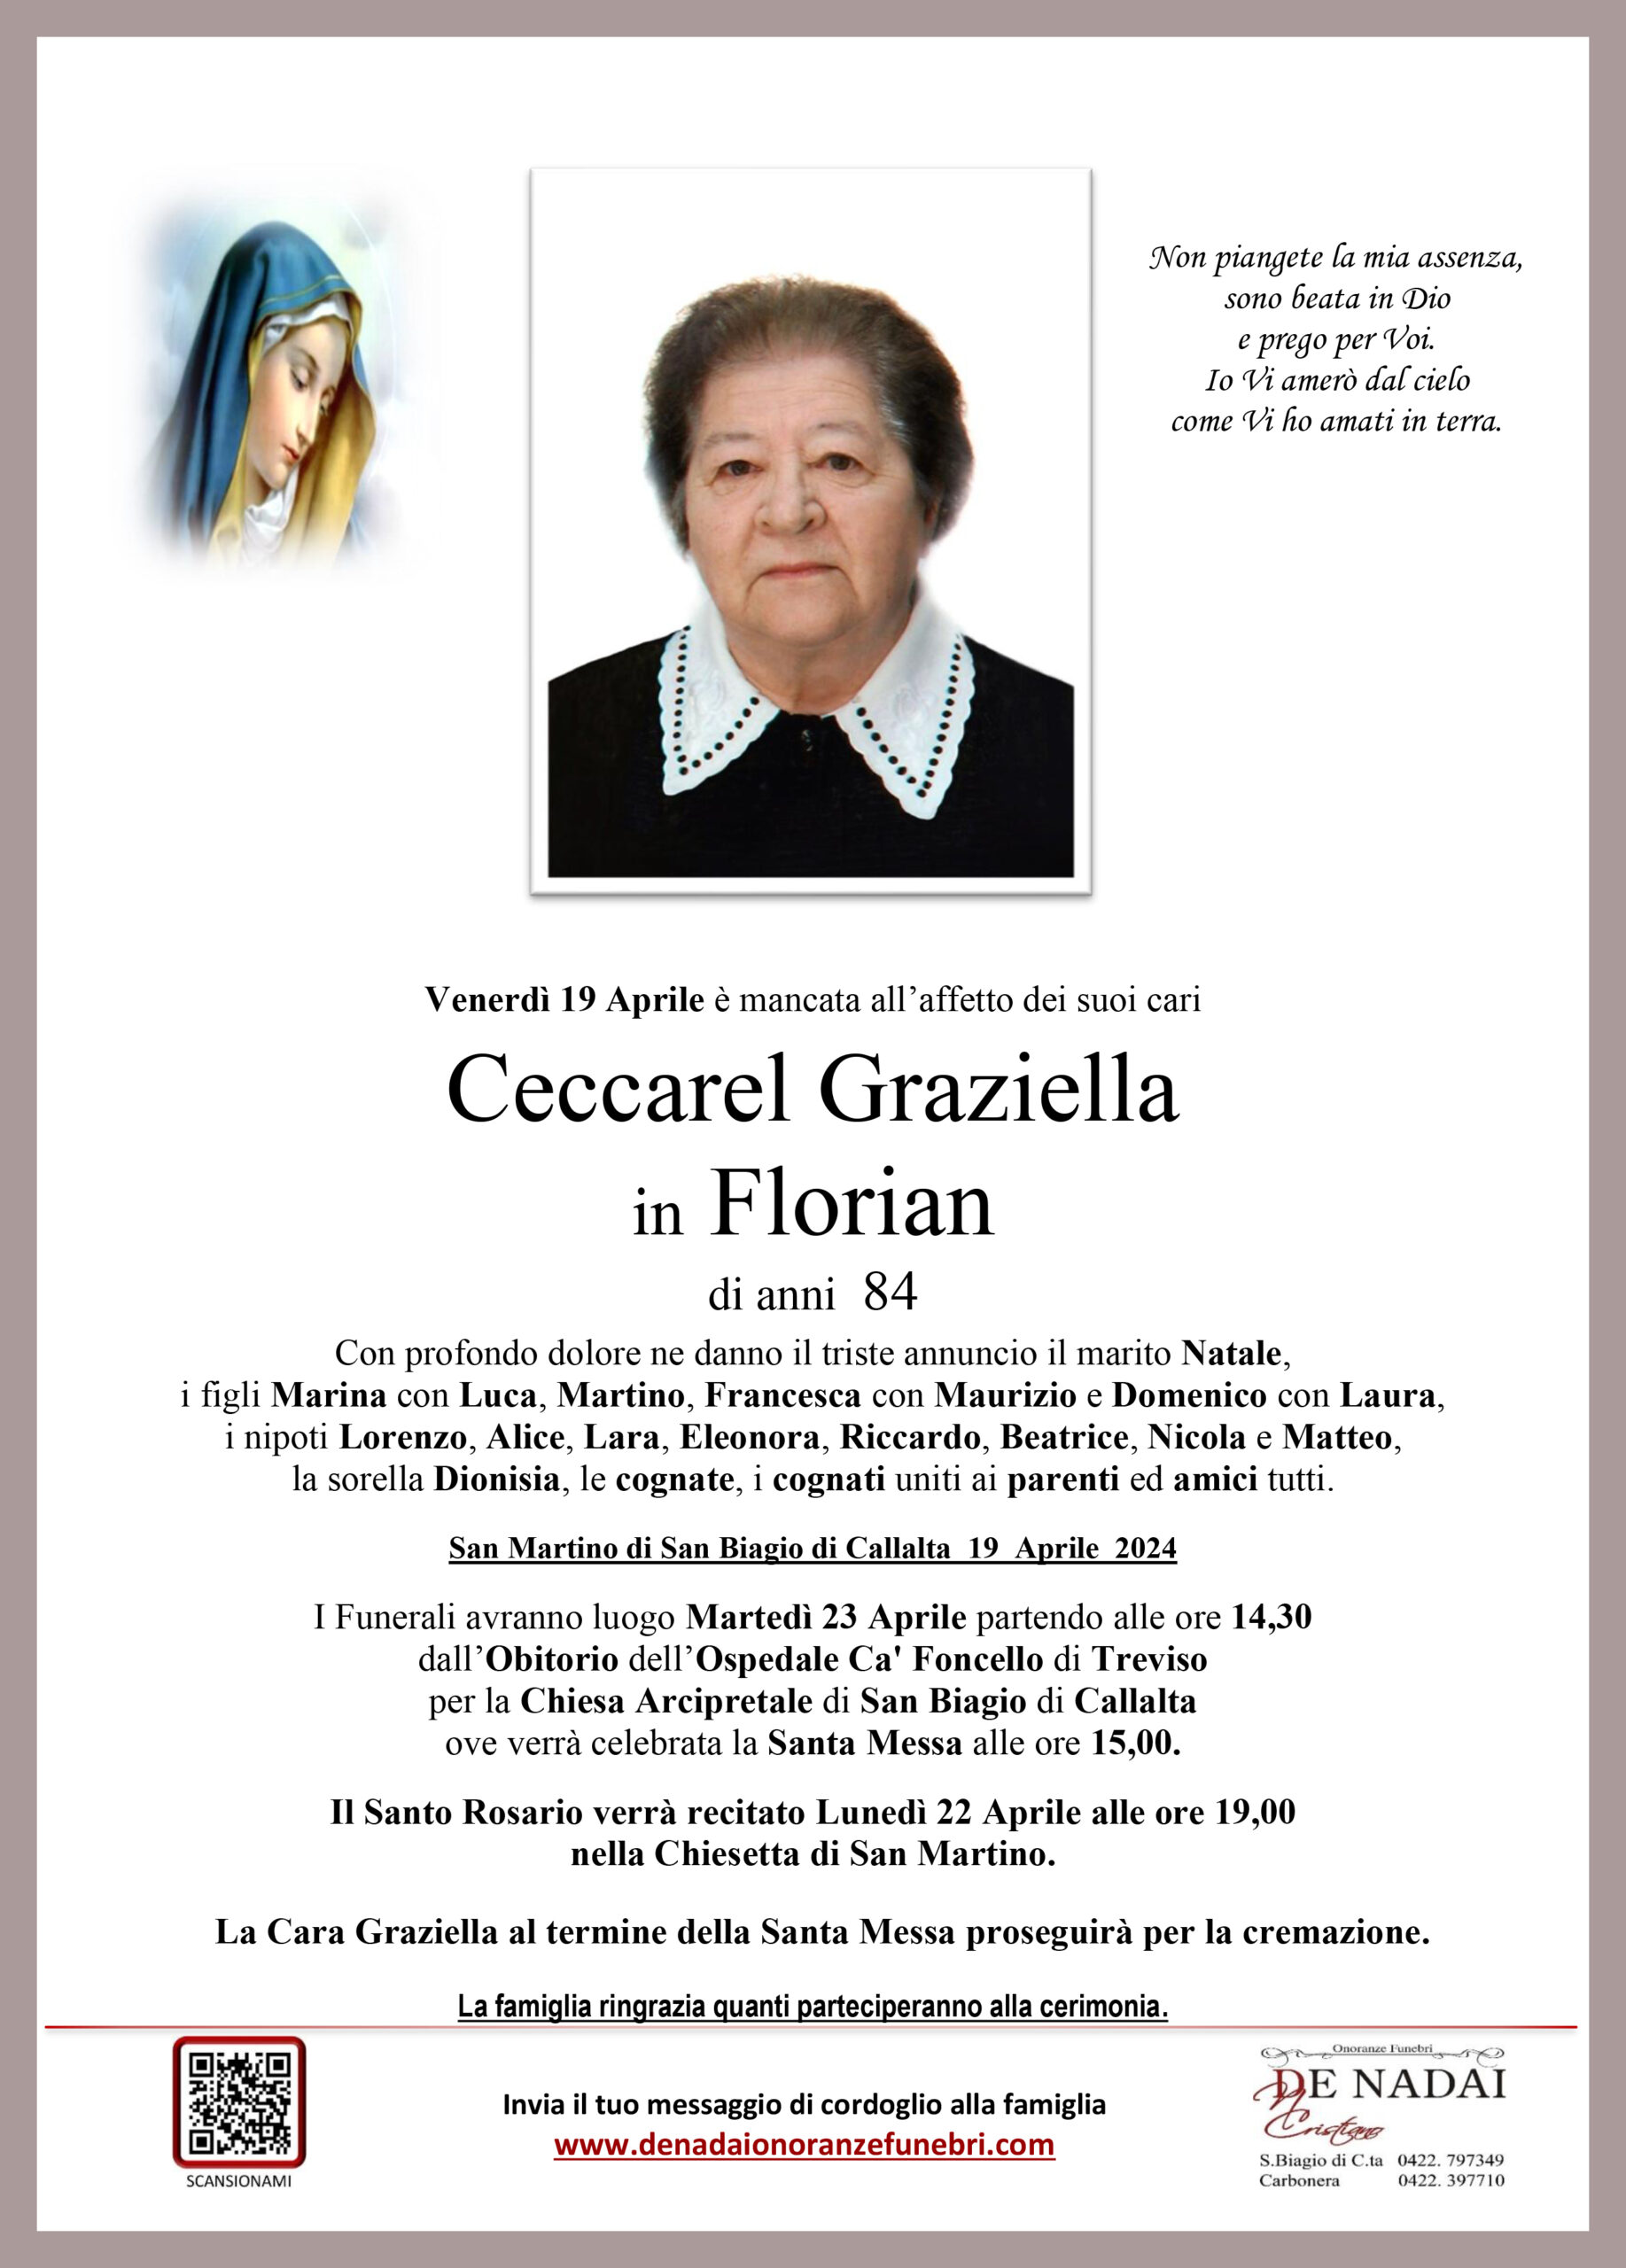 Ceccarel Graziella